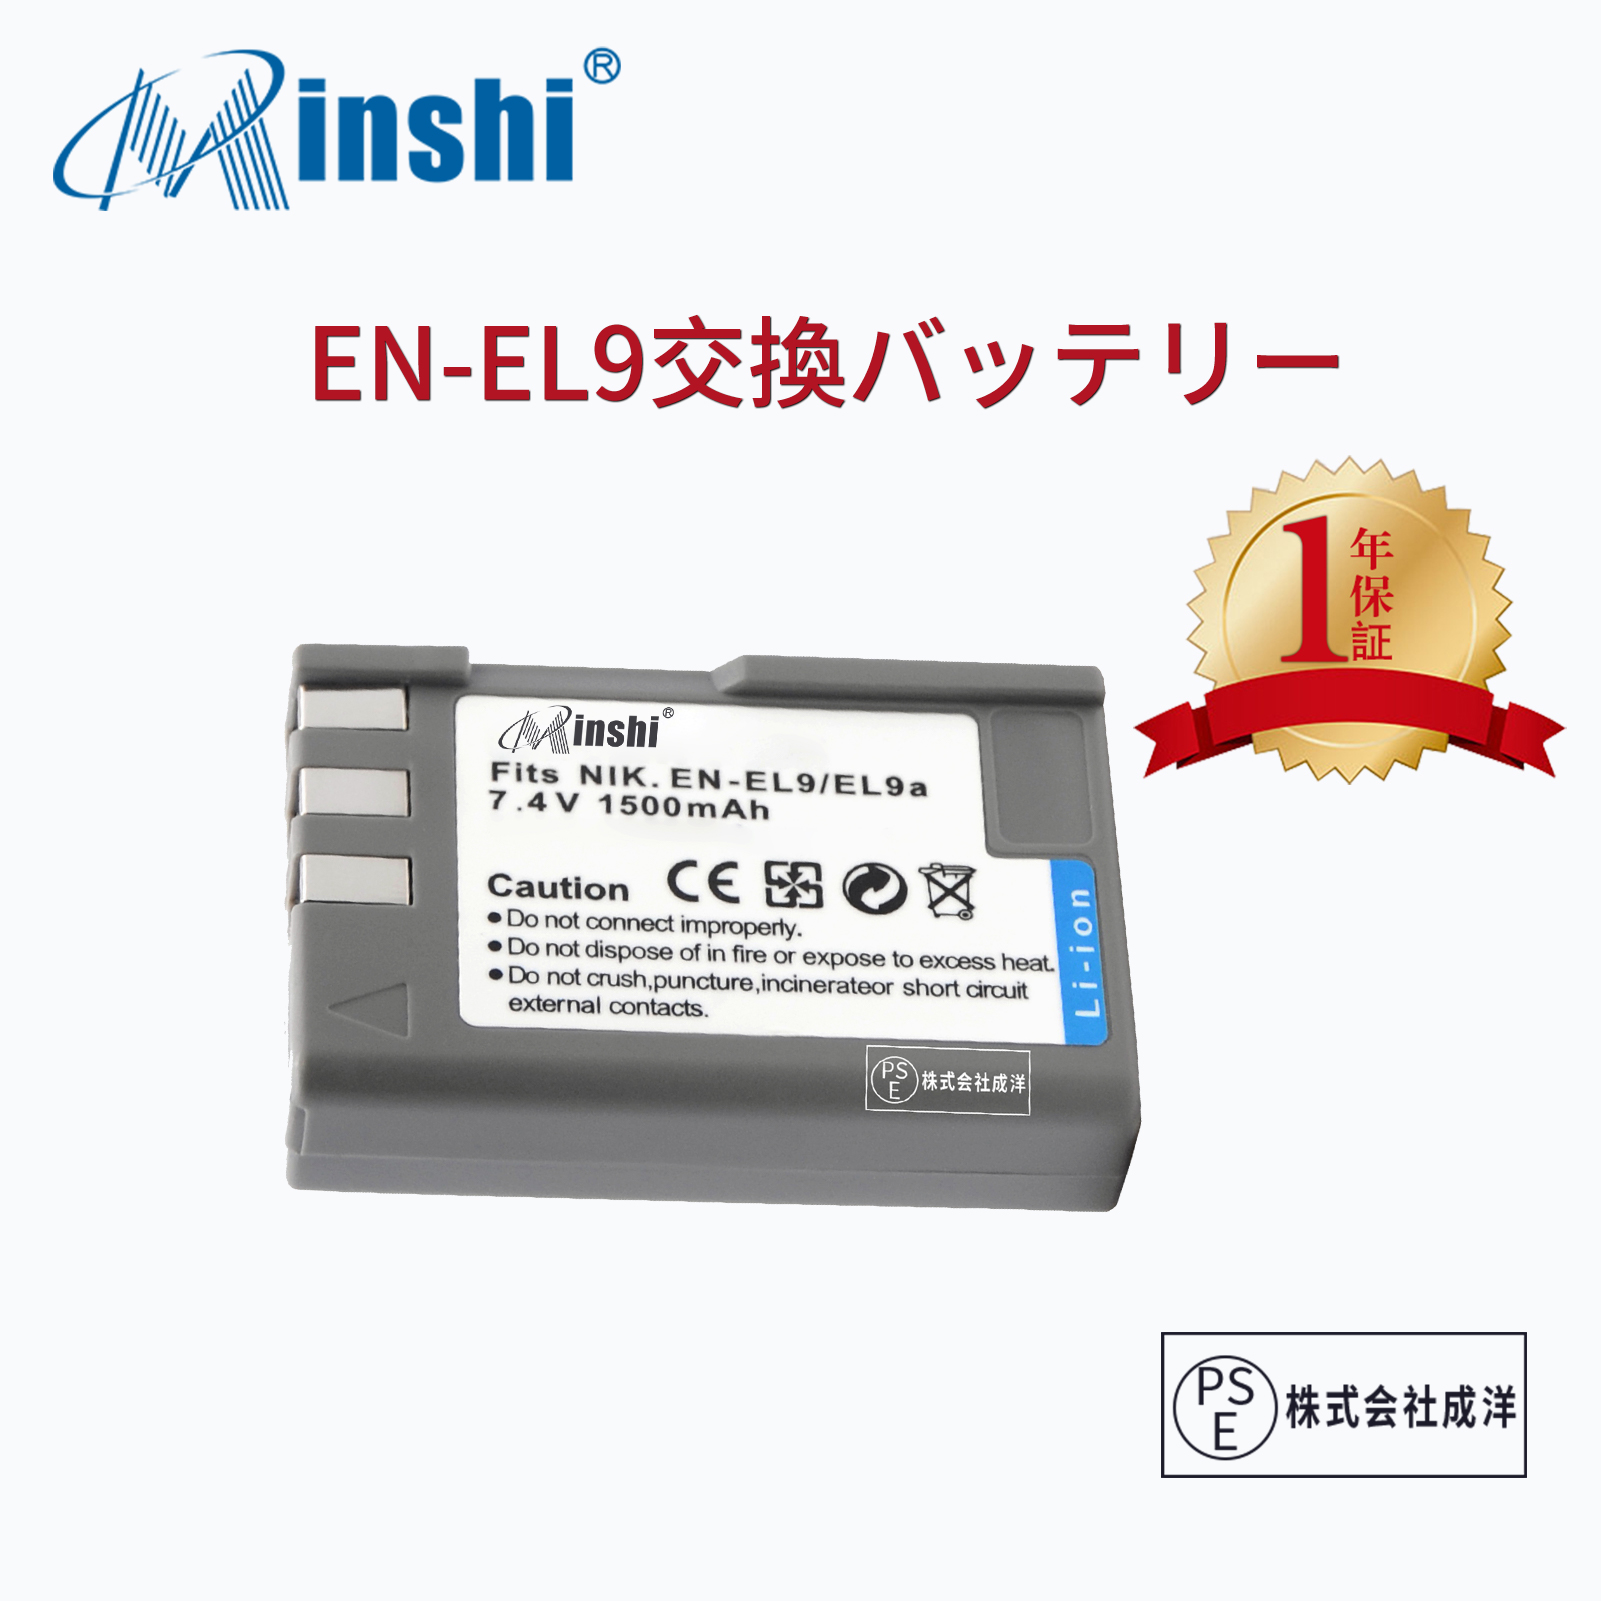 【1年保証】minshi NIKON D60 EN-EL9a 【1500mAh 7.4V】 D40 D60 D3000 D5000PSE認定済 高品質EN-EL9 EN-EL9a EN-EL9e交換用バッテリー